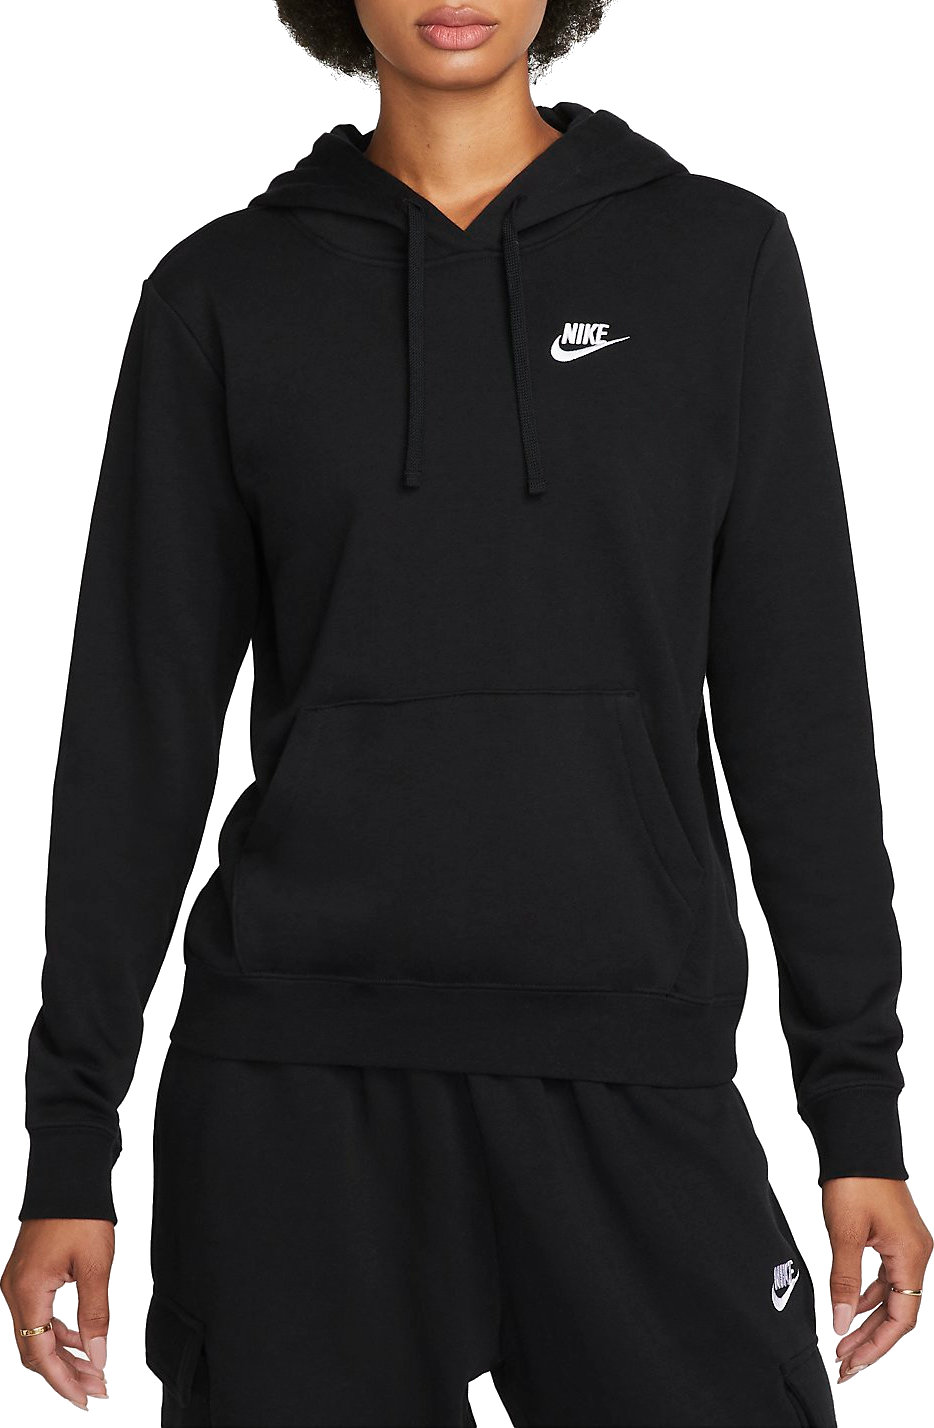 Sweatshirt com capuz Nike brand W NSW CLUB FLC STD PO HDY